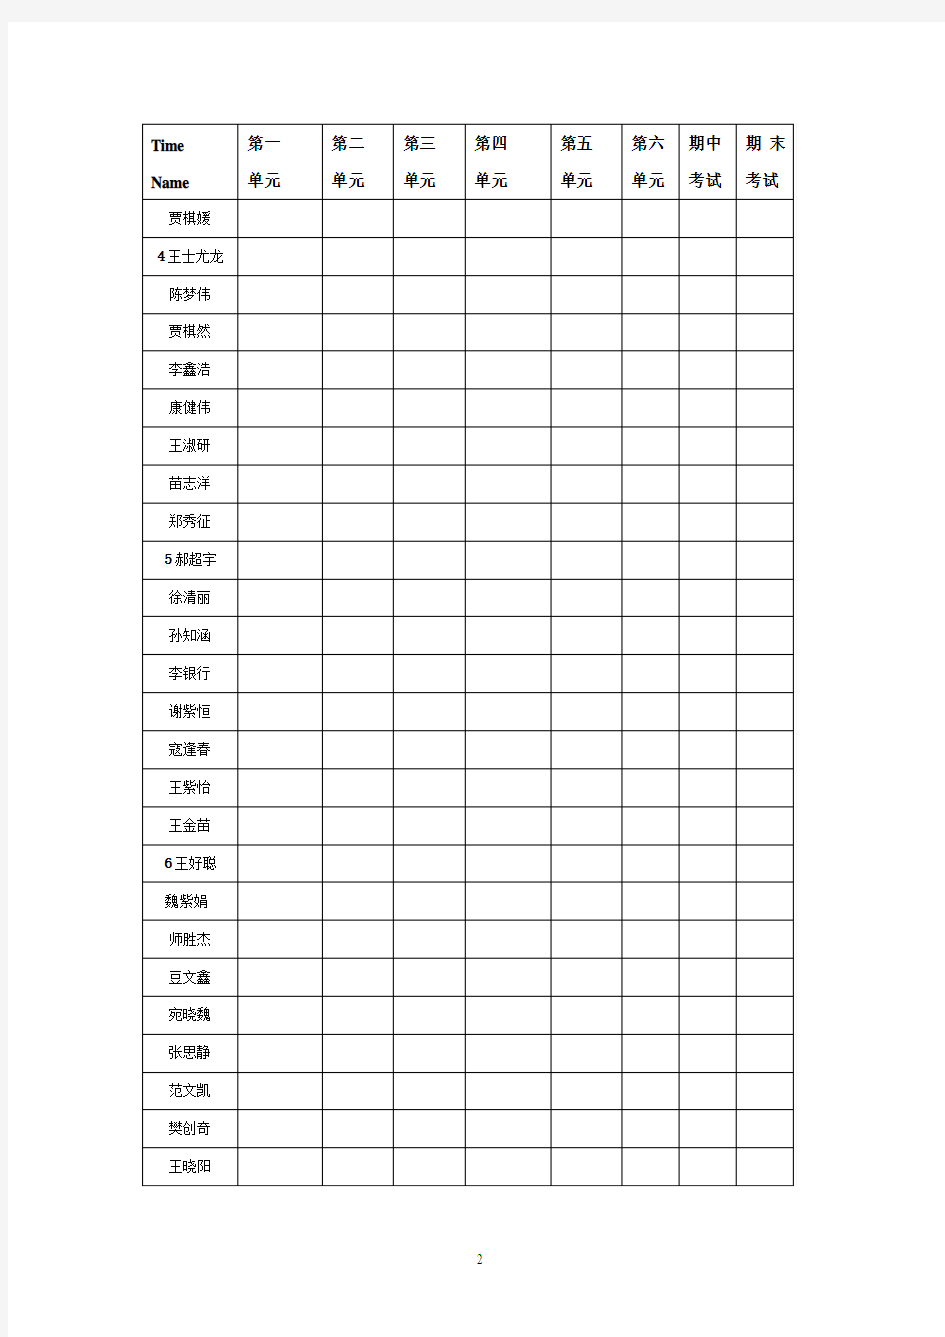 梅东路小学四年级  3班 考试成绩动态记录表